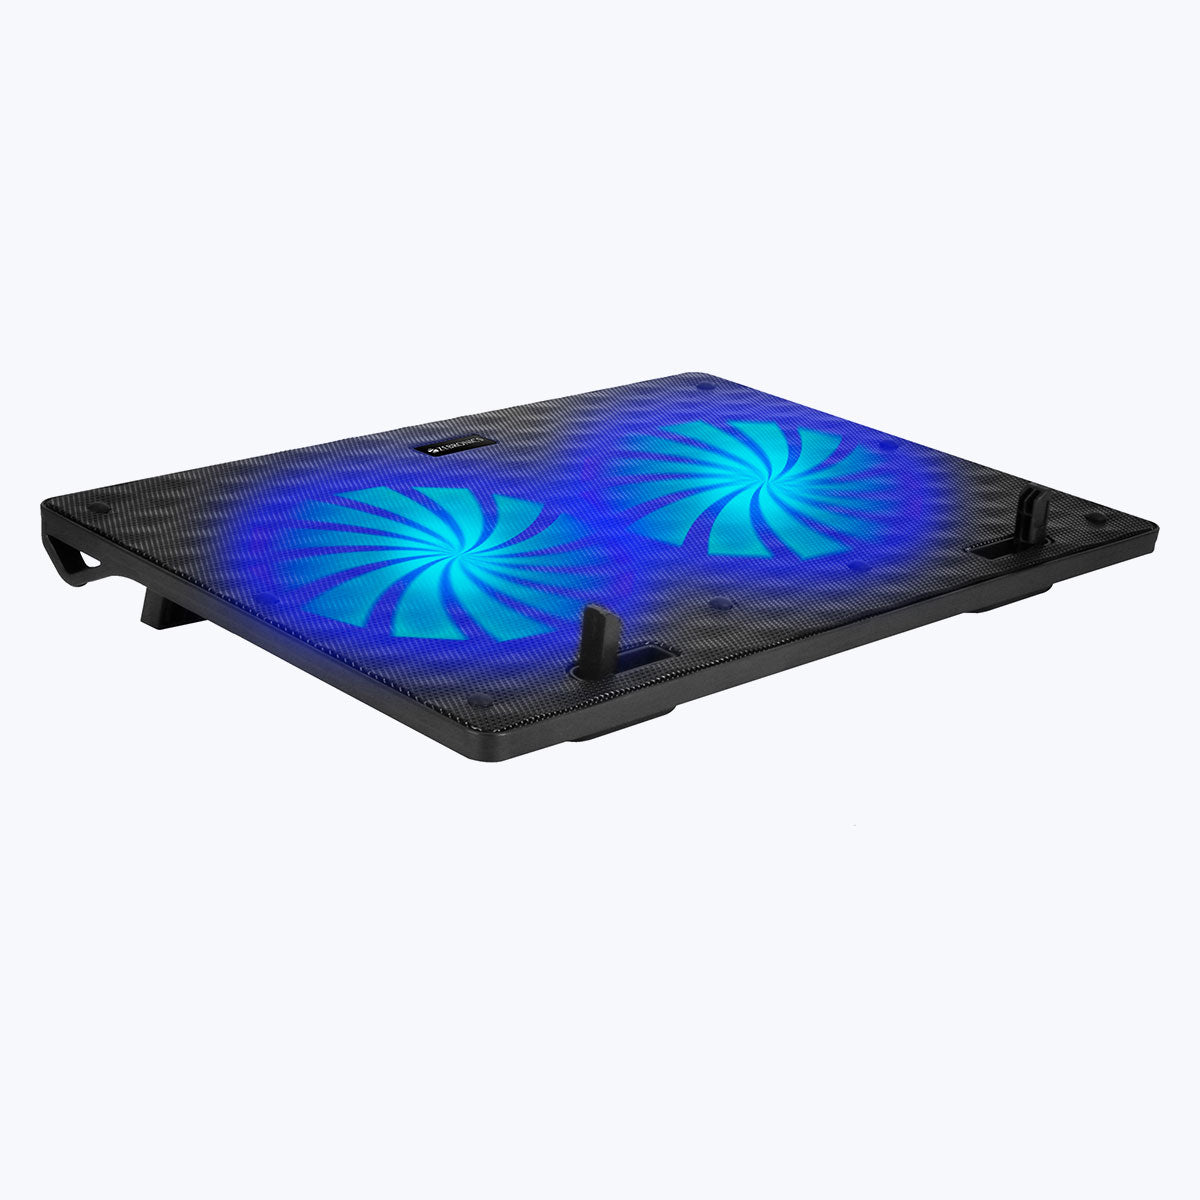 Zeb-NC3300 - Laptop cooling pad - Zebronics